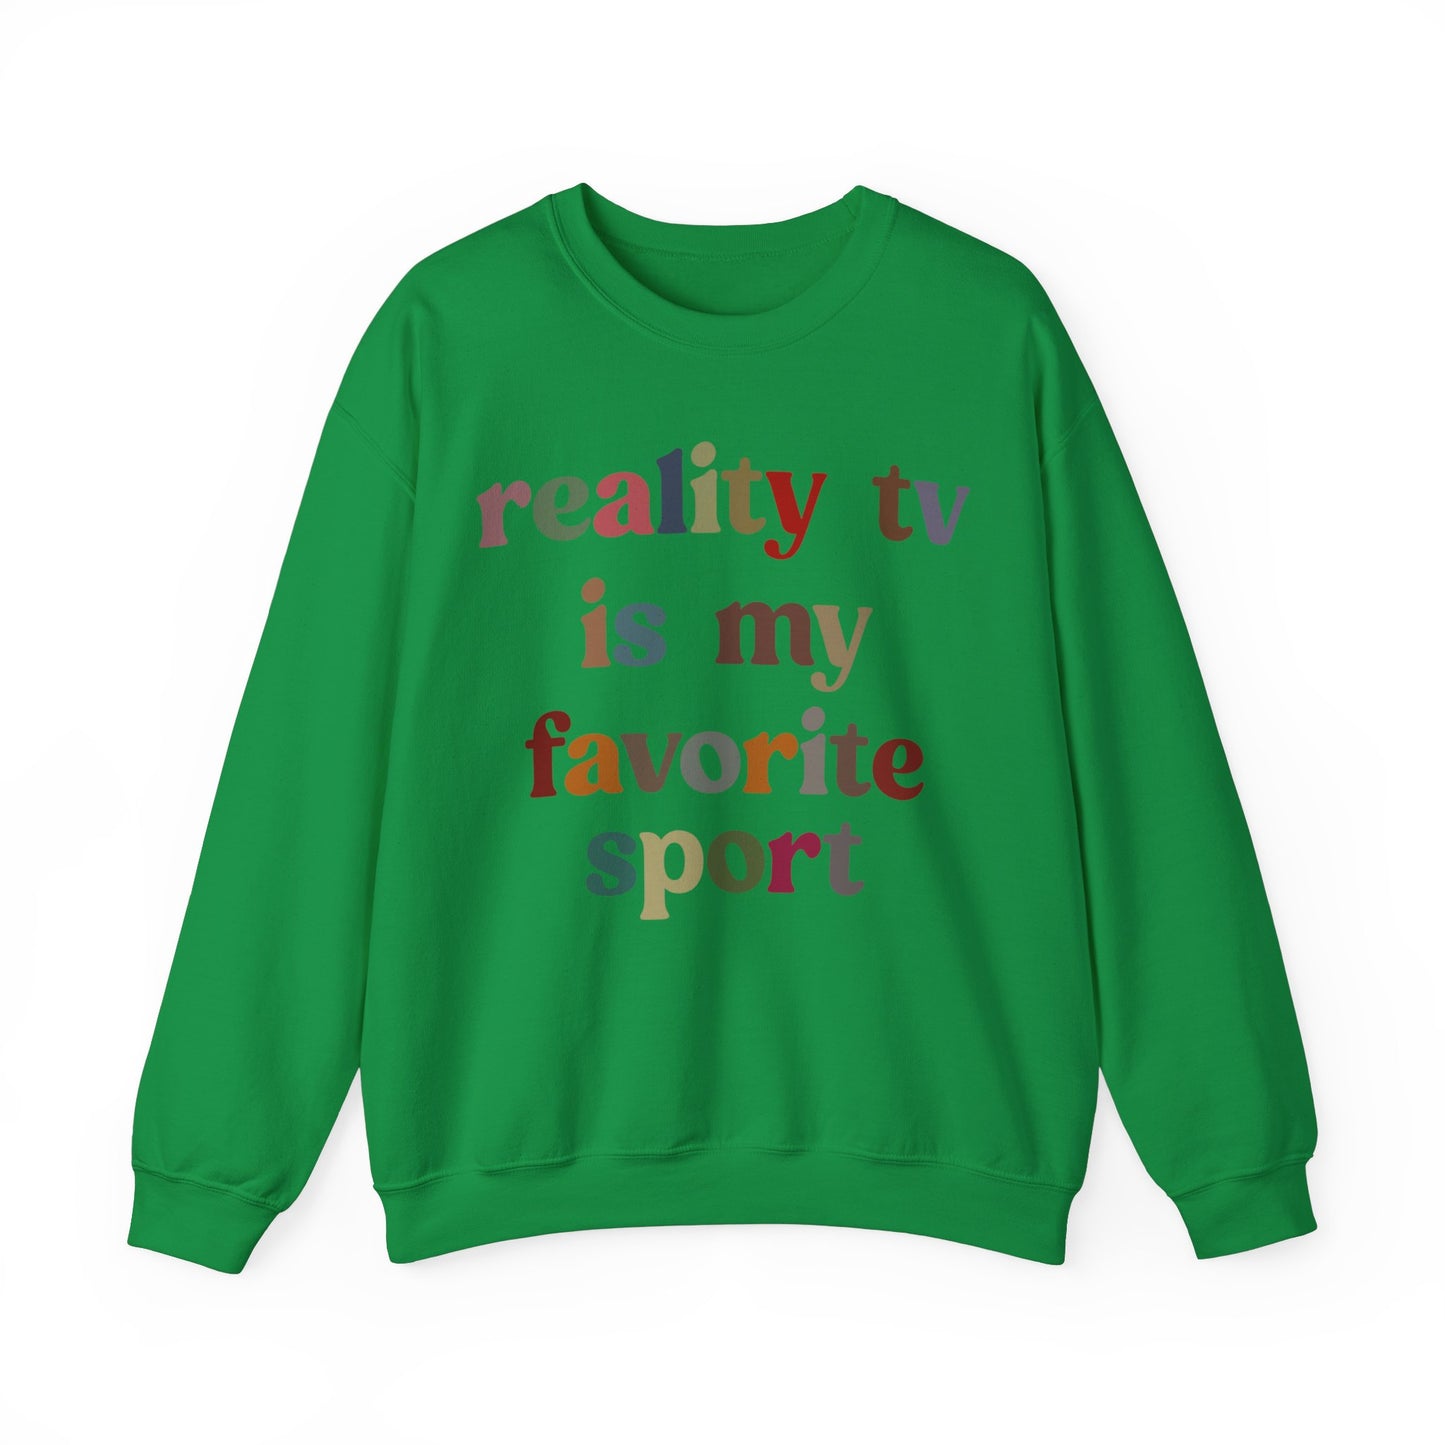 Reality TV Is My Favorite Sport Sweatshirt, Bachelor Fan Sweatshirt, Funny Shirt for Mom, Reality Television Fan Sweatshirt, S1502